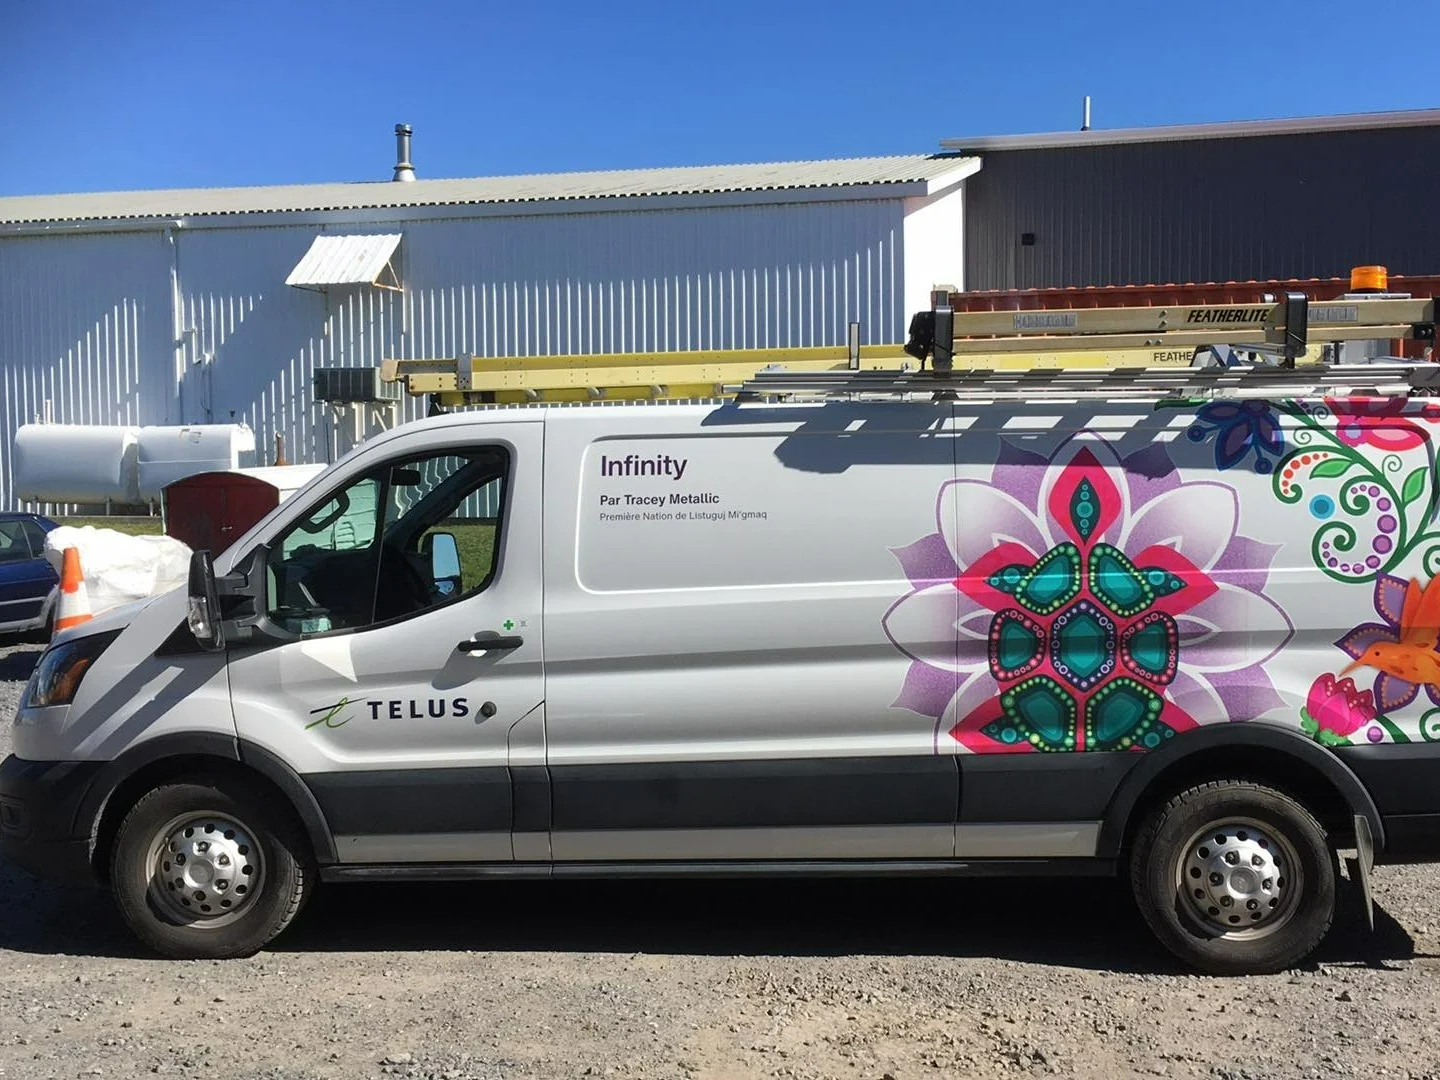 Un véhicule TELUS présentant une œuvre d’art de l’artiste autochtone Tracey Metallic.

